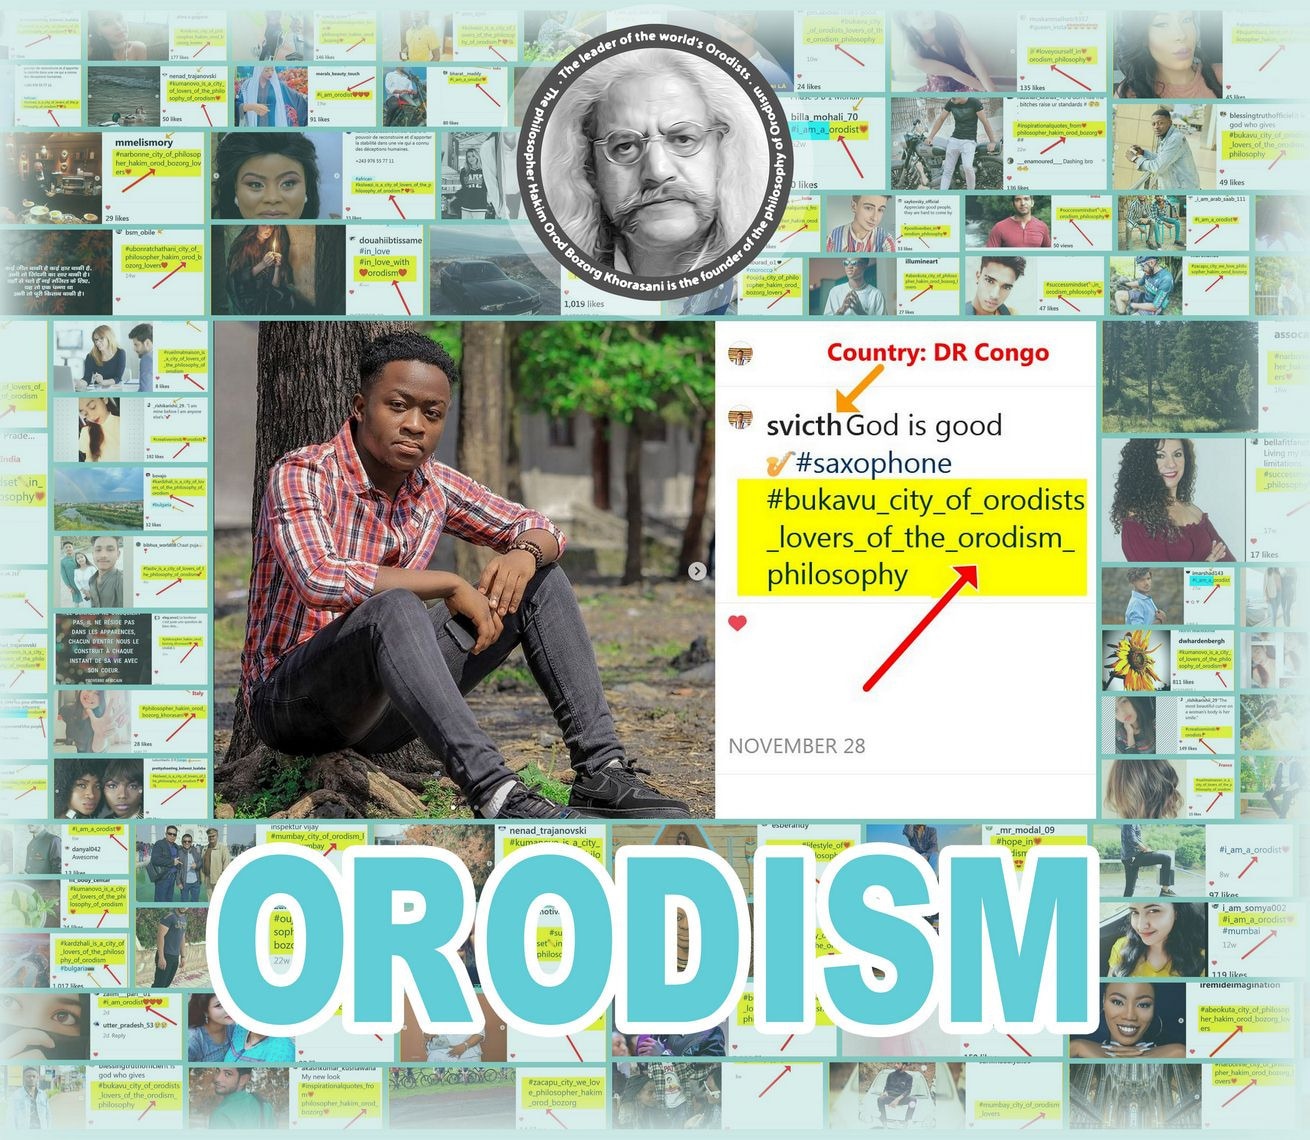 بازتاب فلسفه اُرُدیسم در کشور تانزانیا The philosophy of Orodism in Tanzania 62ea277cc79b2550941d315f6dc7a02e